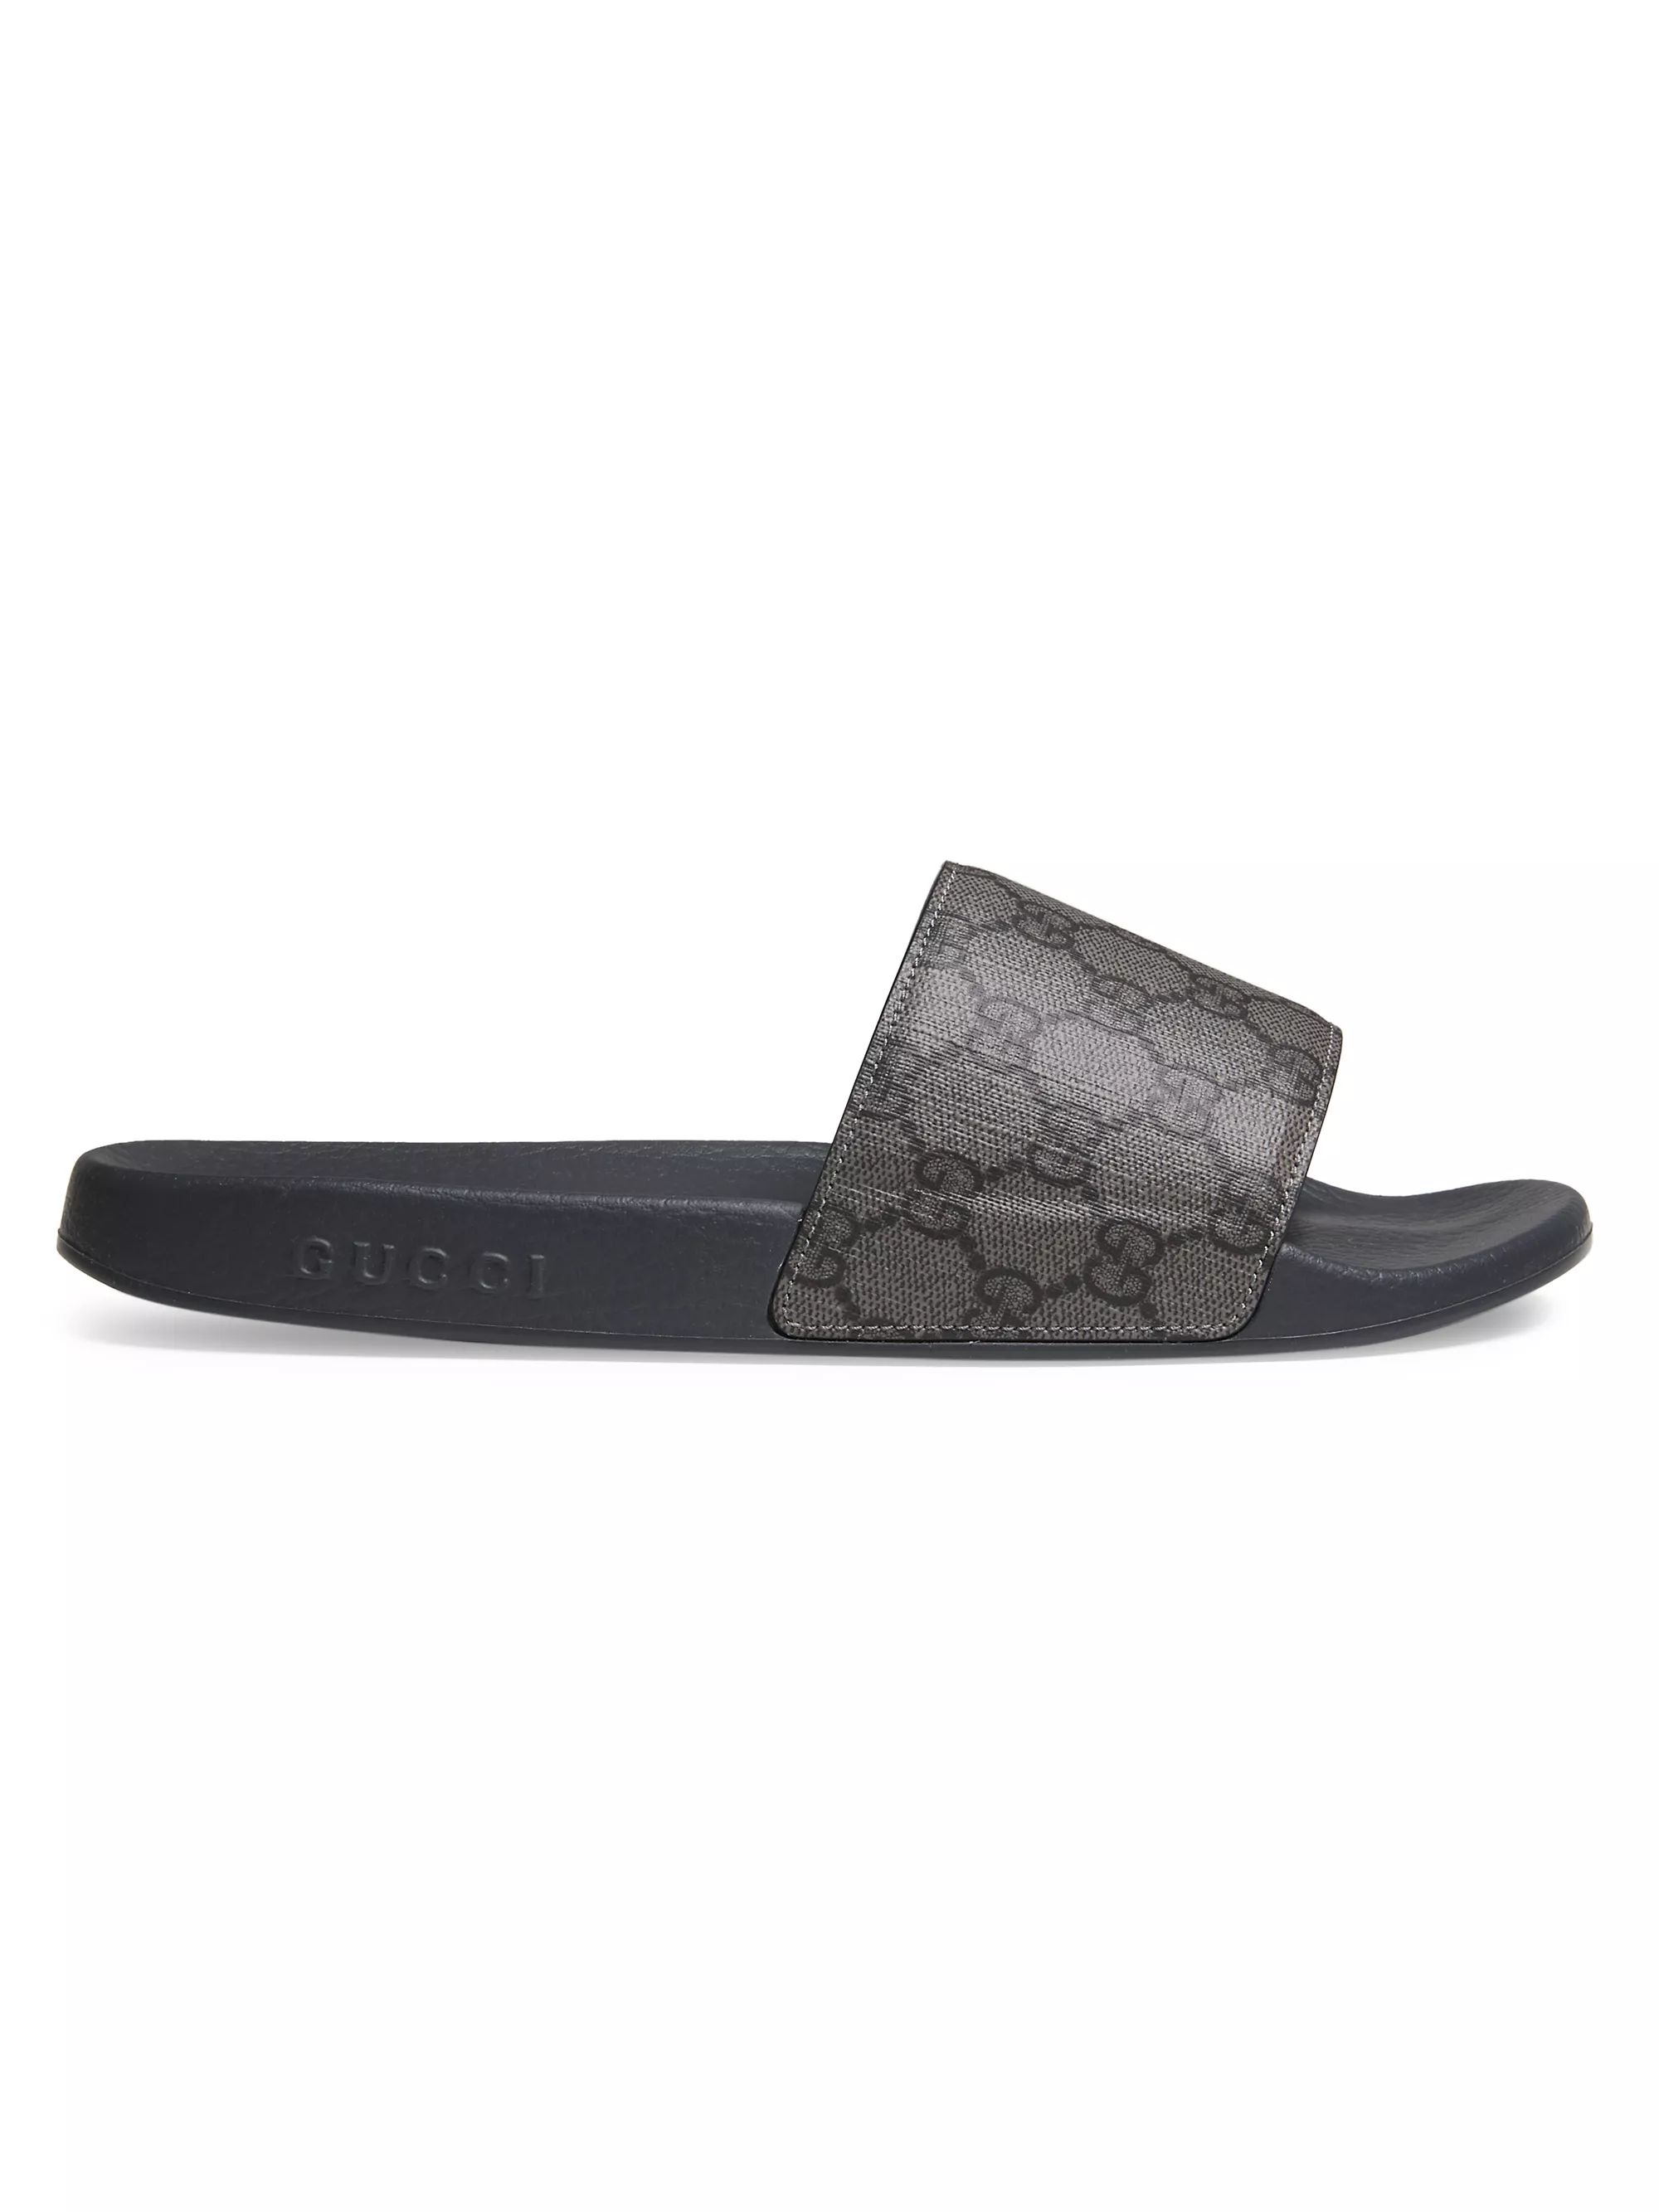 GG Supreme Canvas Slide Sandals | Saks Fifth Avenue